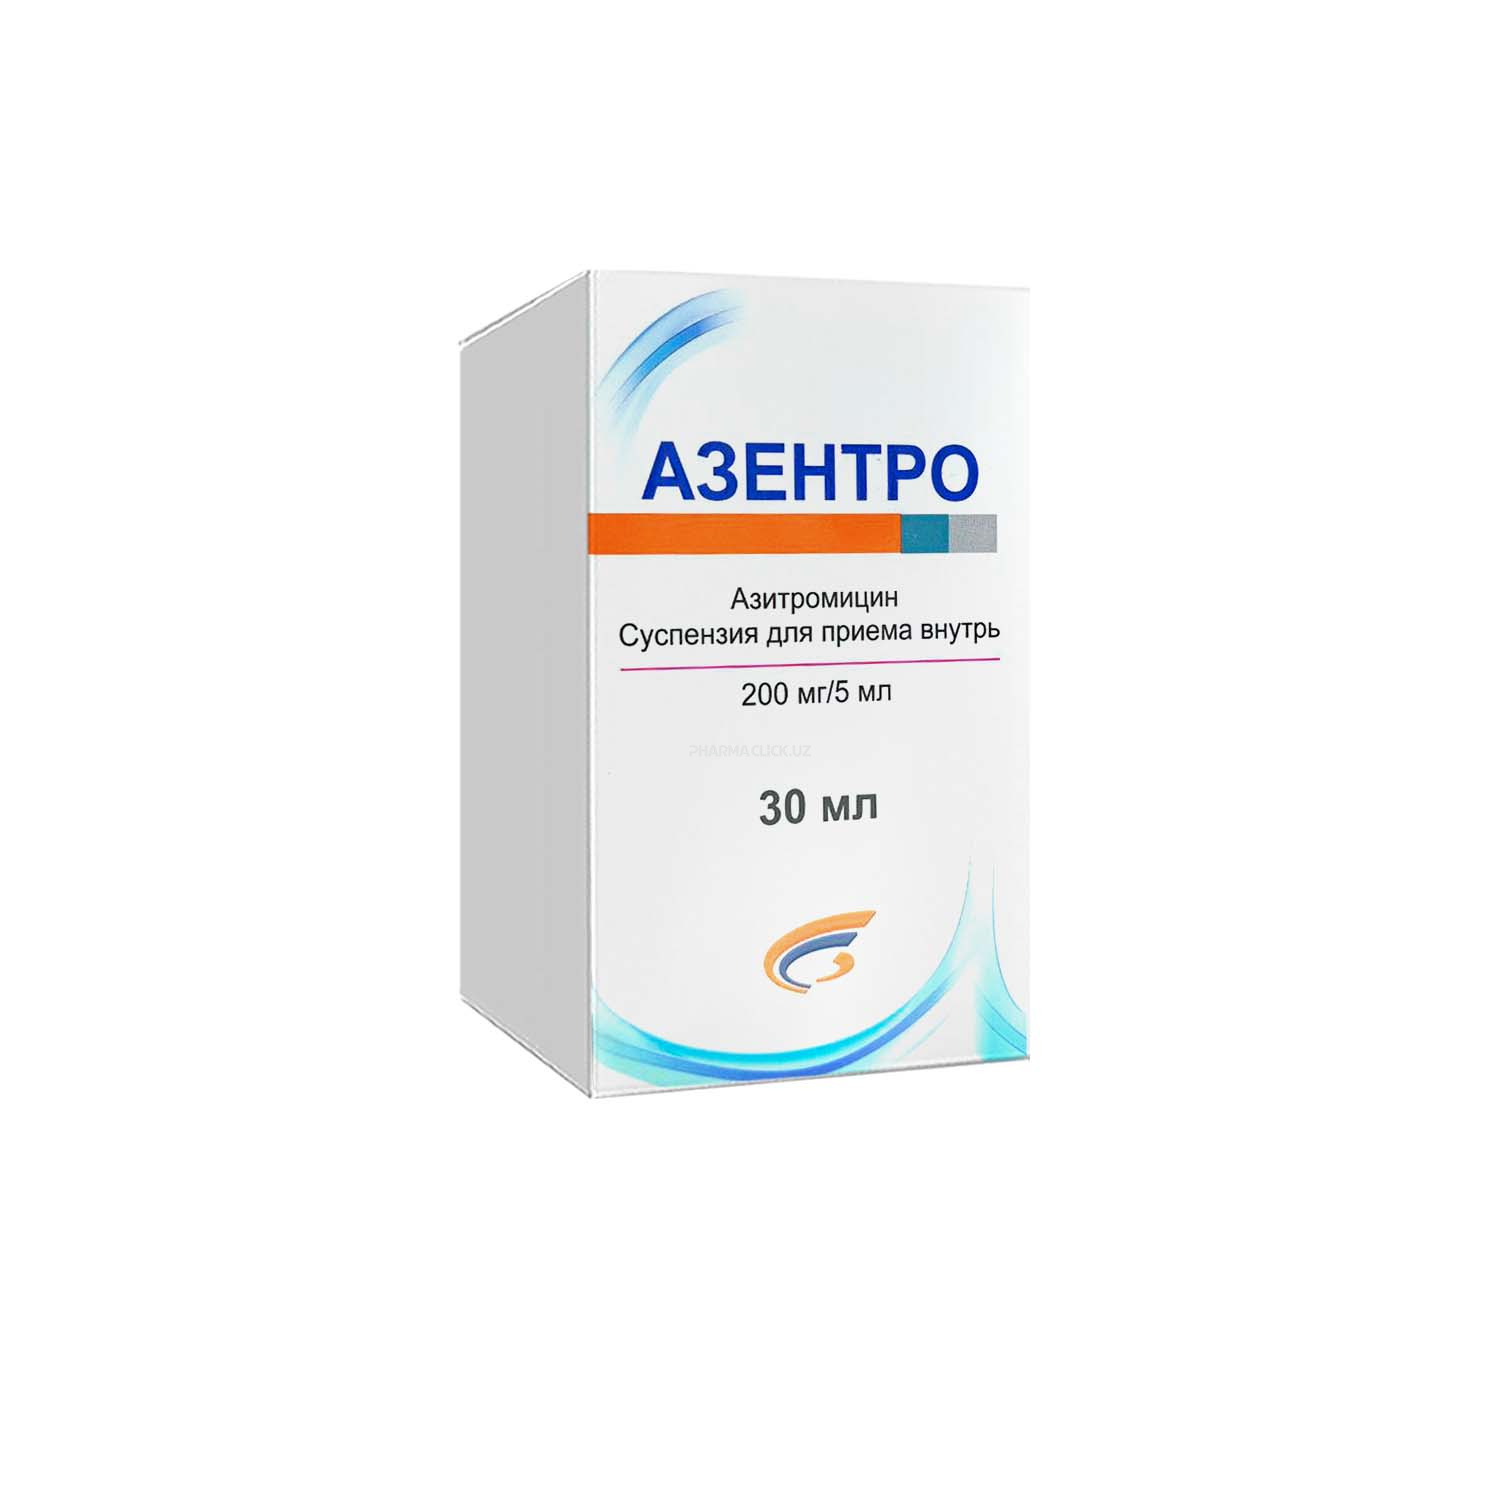 Азентро суспензия 200мг/5мл 30 мл (Азитромицин)